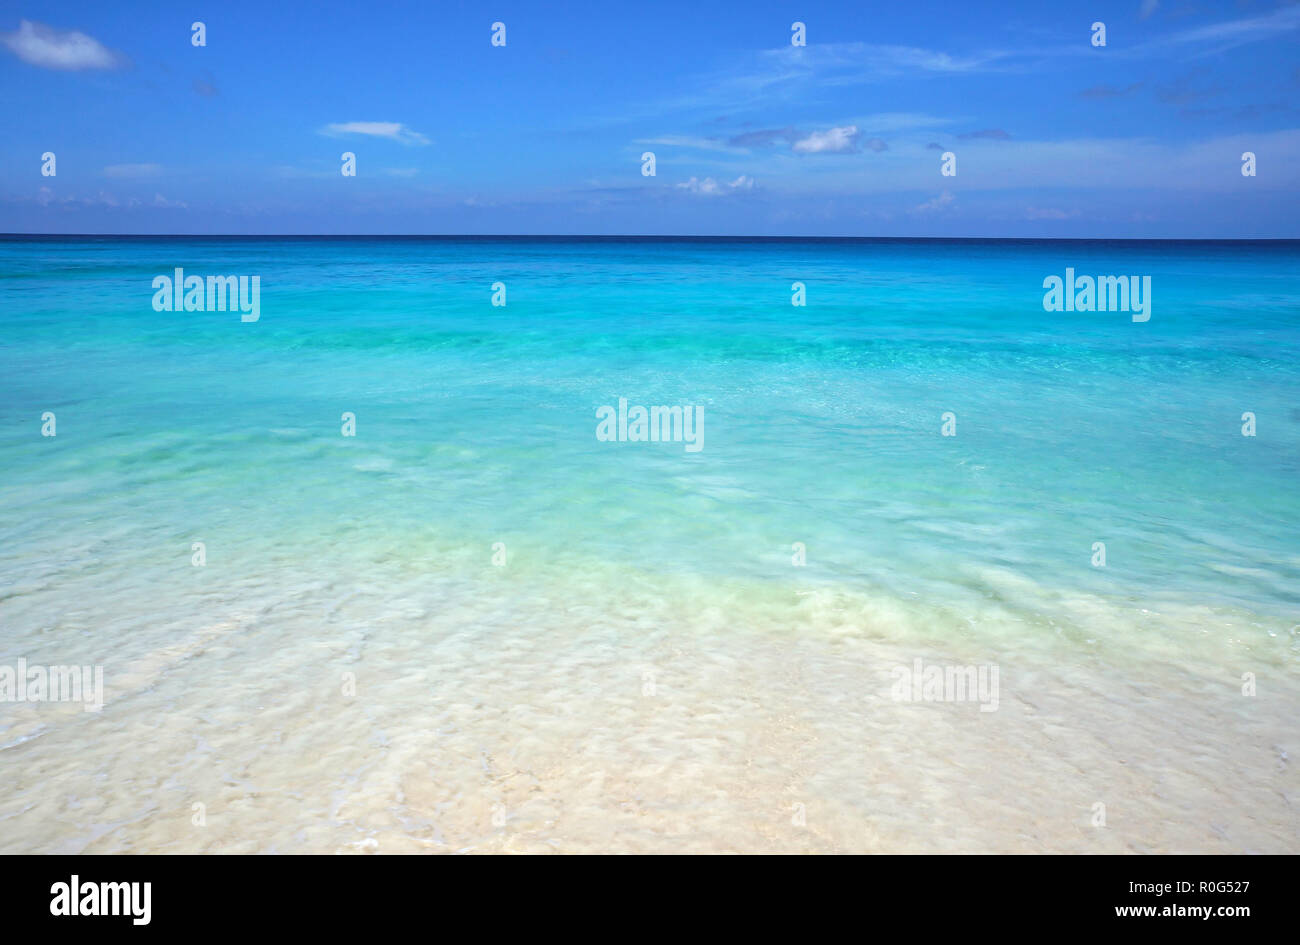 Scenic seascape di azzurro Oceano trasparente acqua e cielo blu. Spiaggia tropicale con sabbia bianca. Scenario idilliaco della località balneare. Viaggi esotici destin Foto Stock